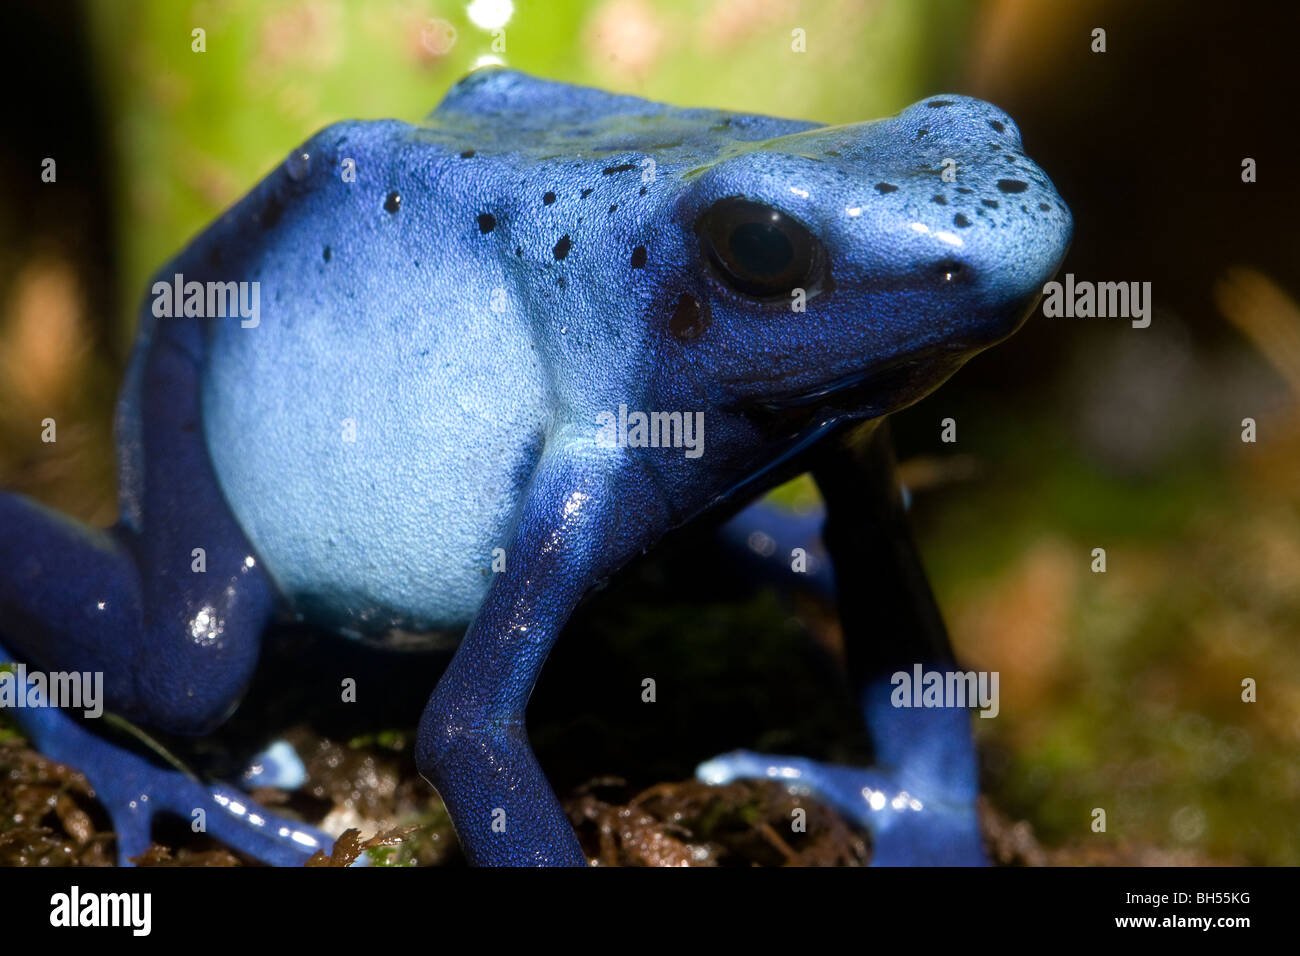 Blue Poison Dart Frog, Dendrobates azureus, Amazon River basin Stock Photo